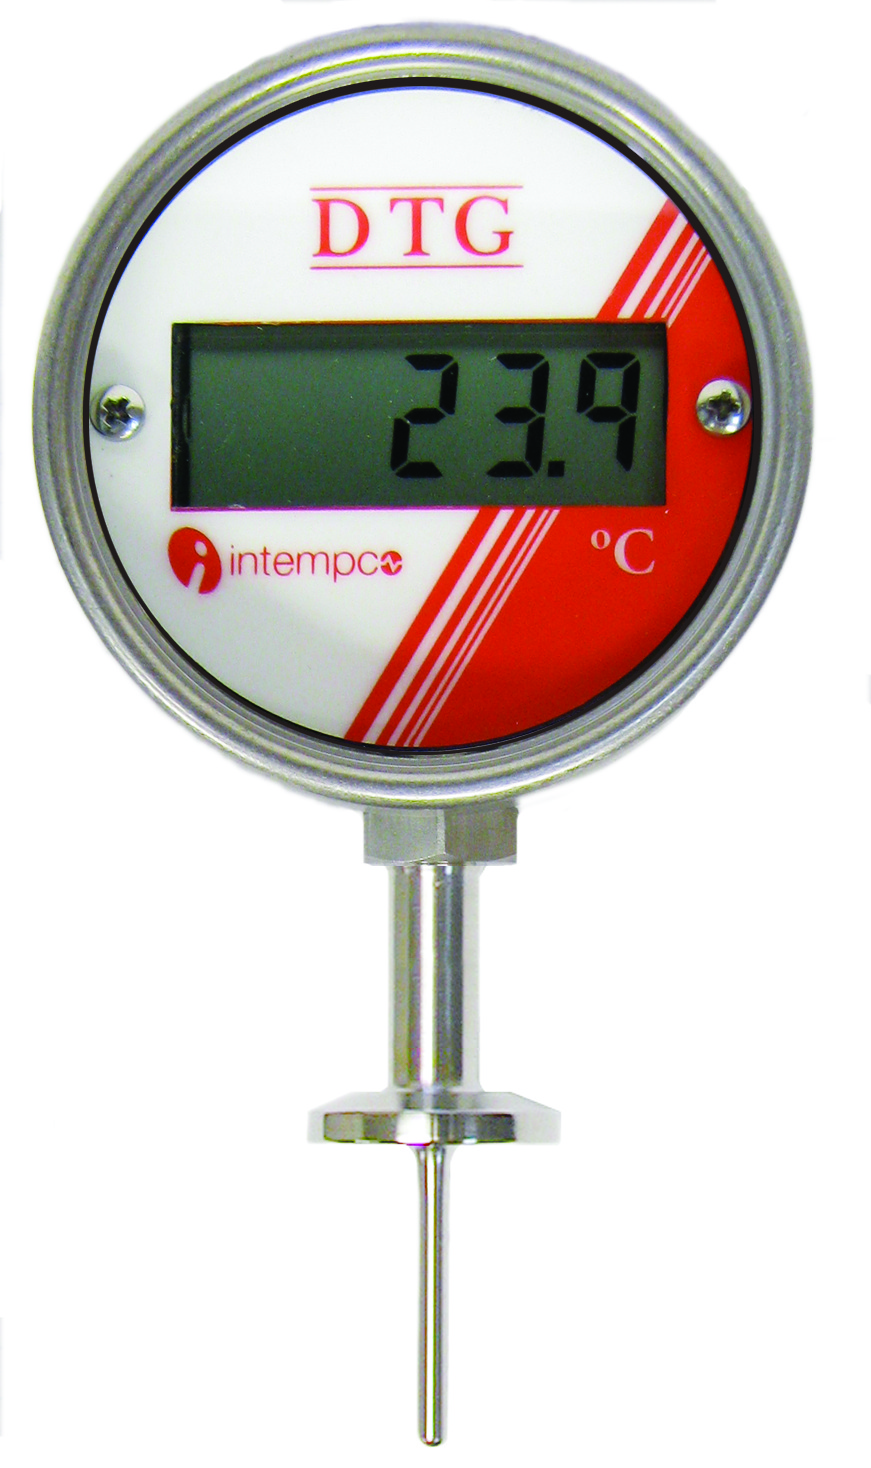 Intempco digital temperature gauge